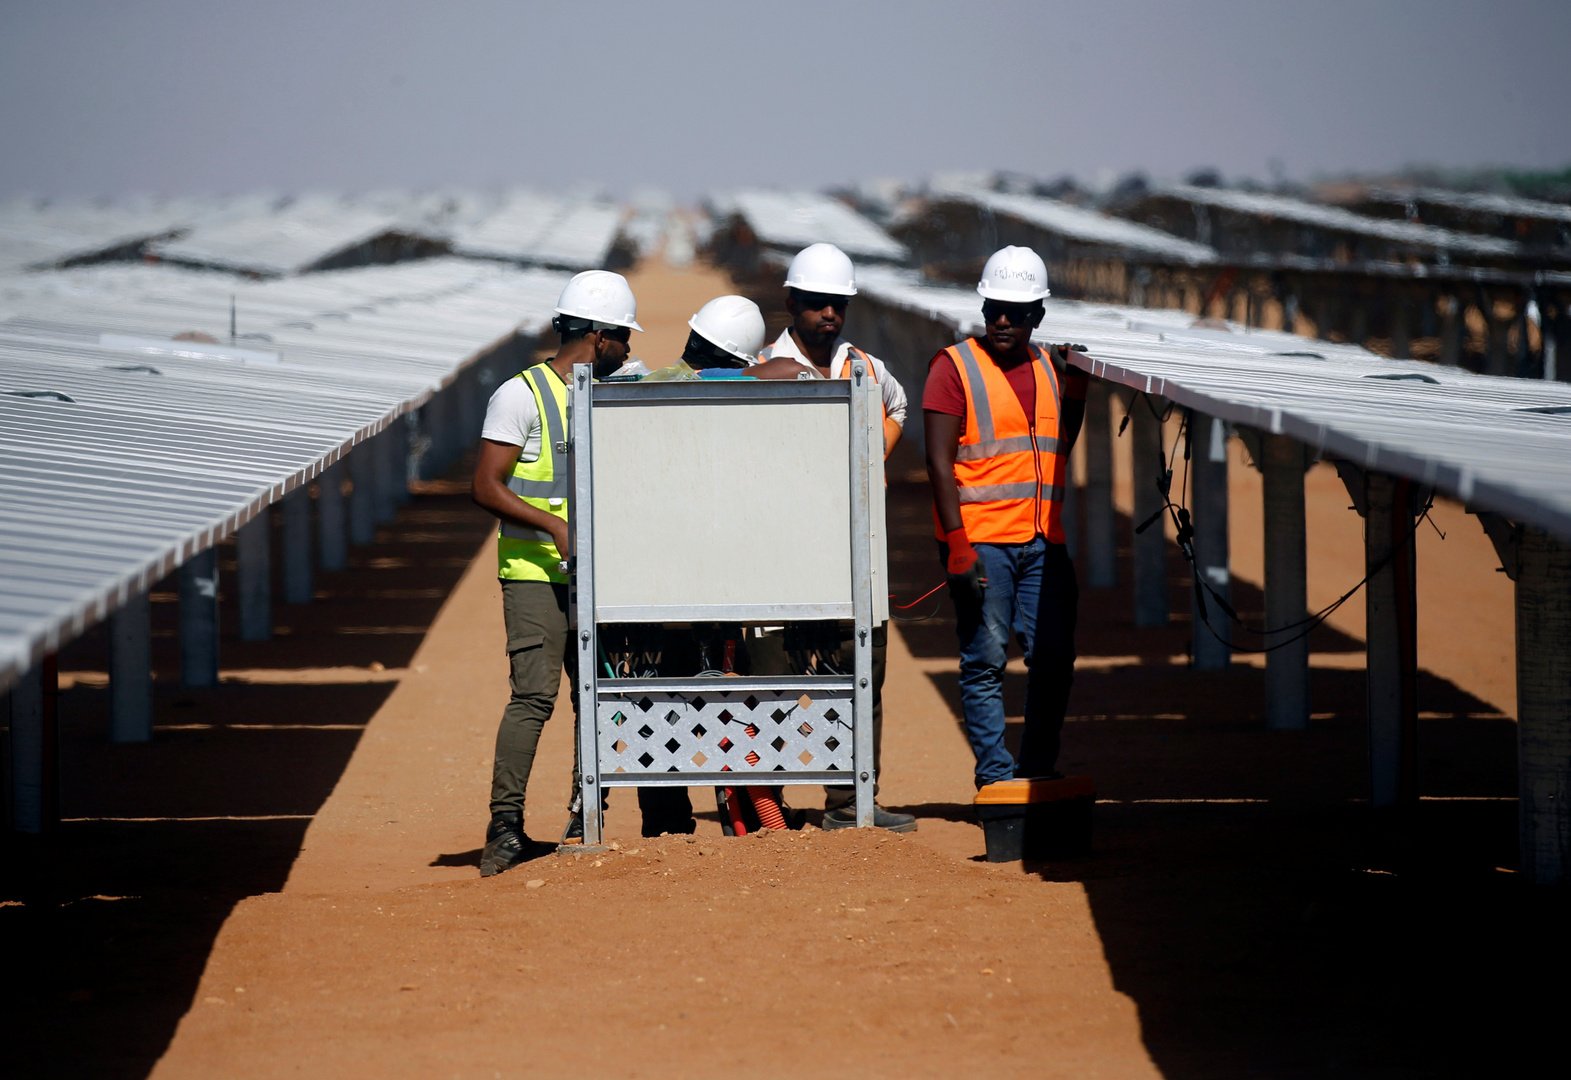 مزرعة شمسية عملاقة في مصر يمكن رؤيتها من الفضاء تولد طاقة هائلة (صور)